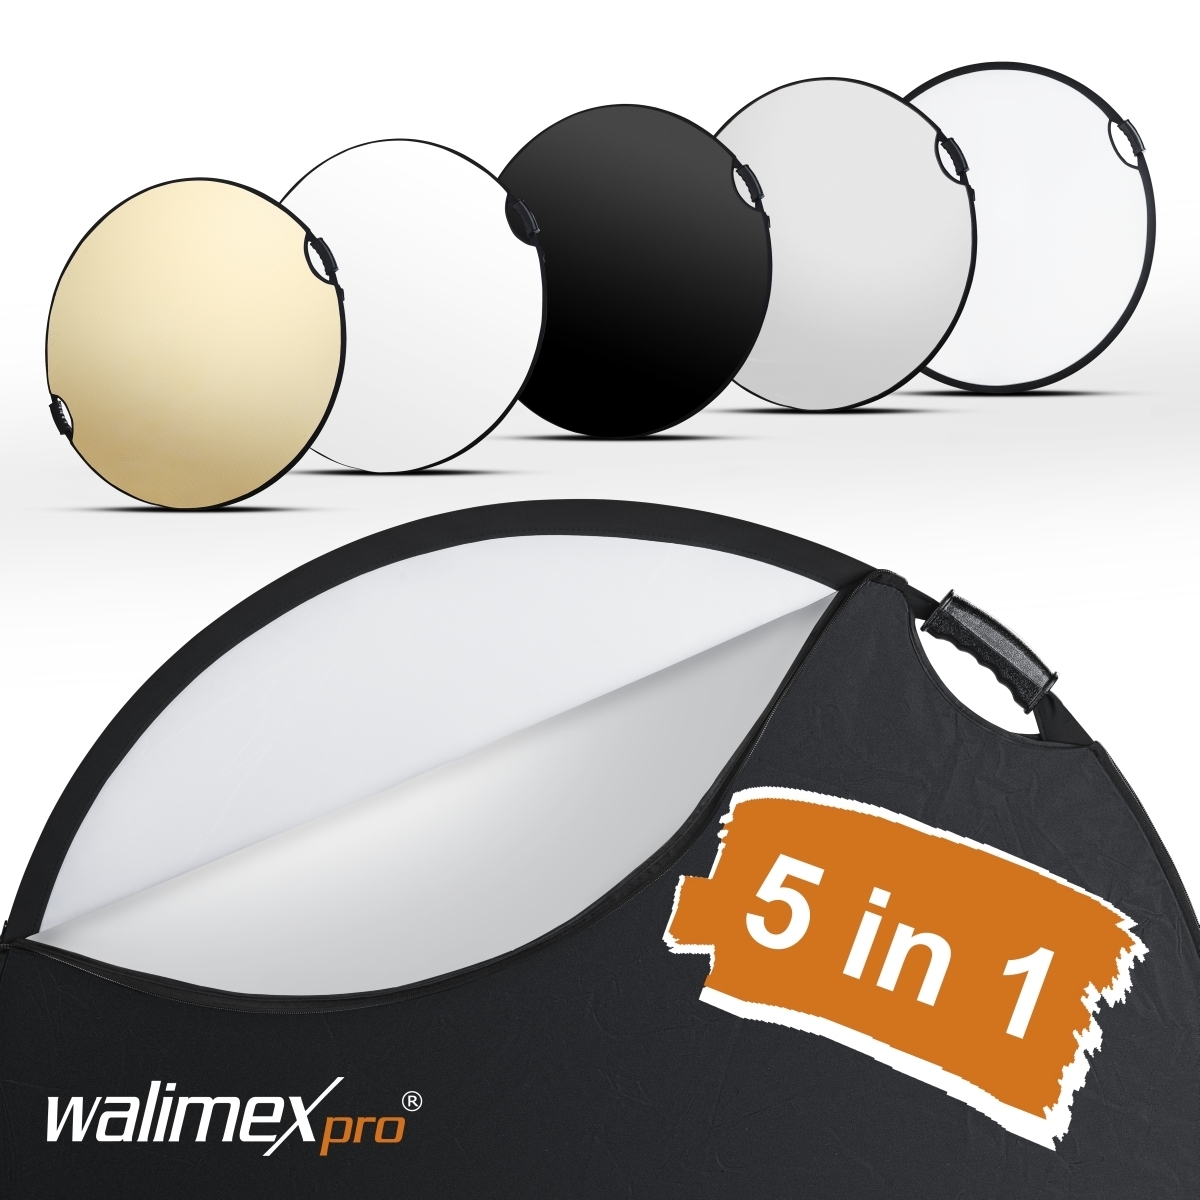 Walimex pro 5in1 vouwreflector wavy comfort Ø80cm met handgrepen en 5 reflectorkleuren